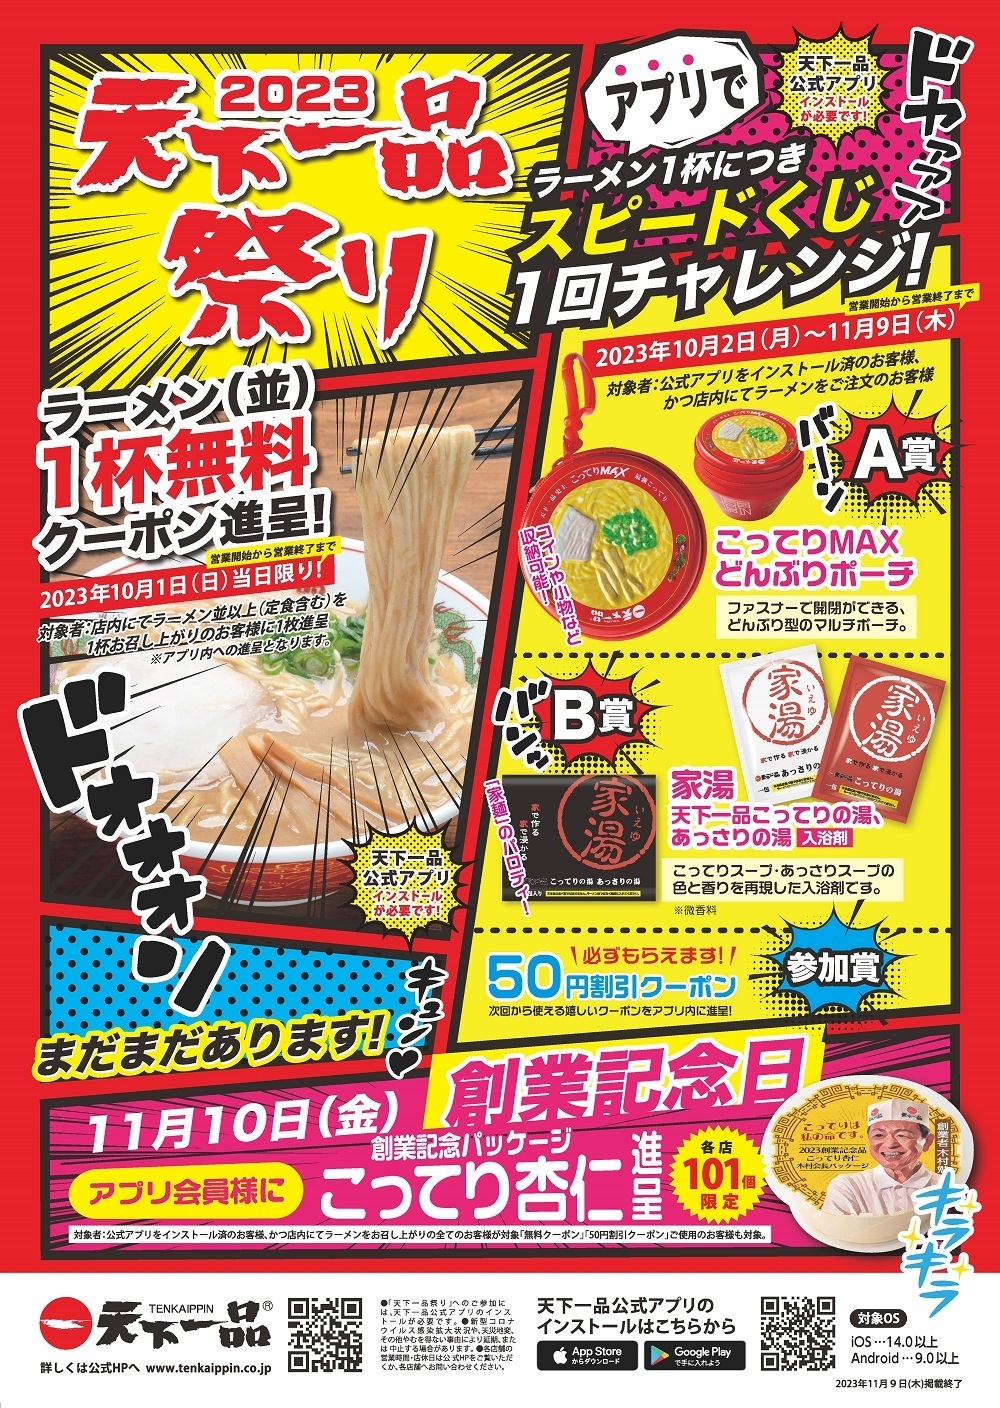 日本百貨店のごはんのおともが勢ぞろい「めしとも」フェア、
9月1日から店頭及びオンラインショップで開催